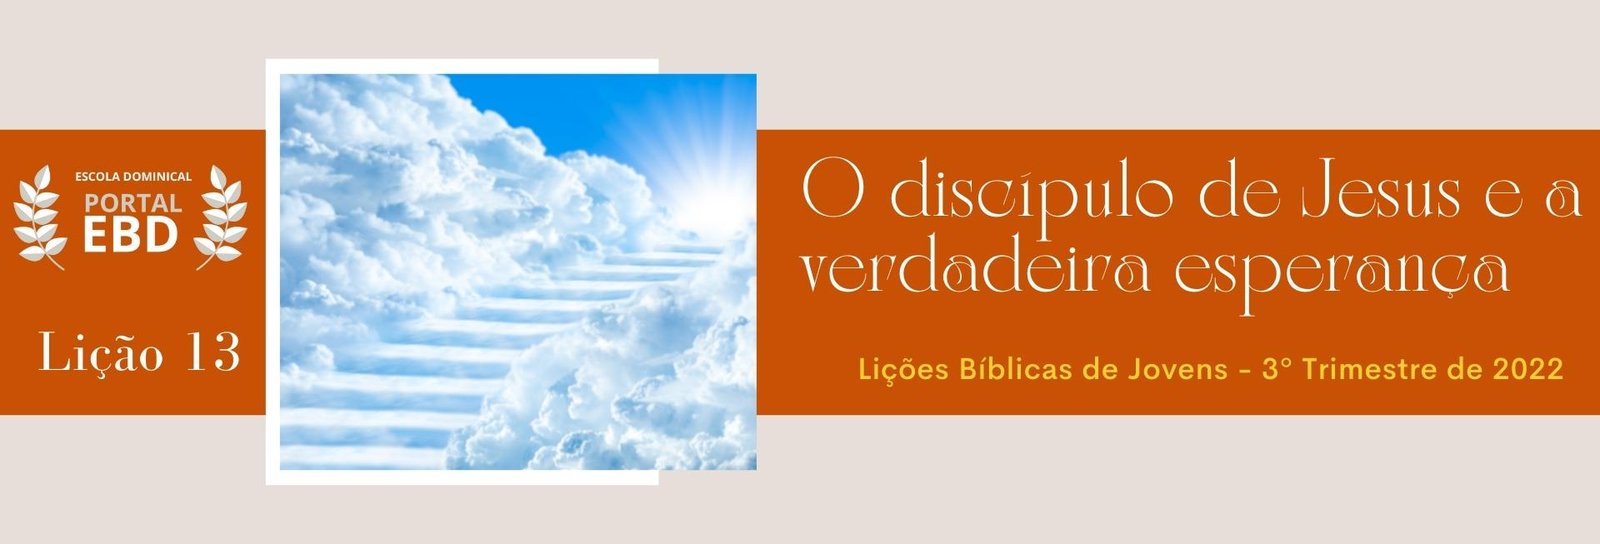 Portal EBD - Lição 13 - O discípulo de Jesus e a verdadeira esperança -  SLIDES E VIDEOAULAS